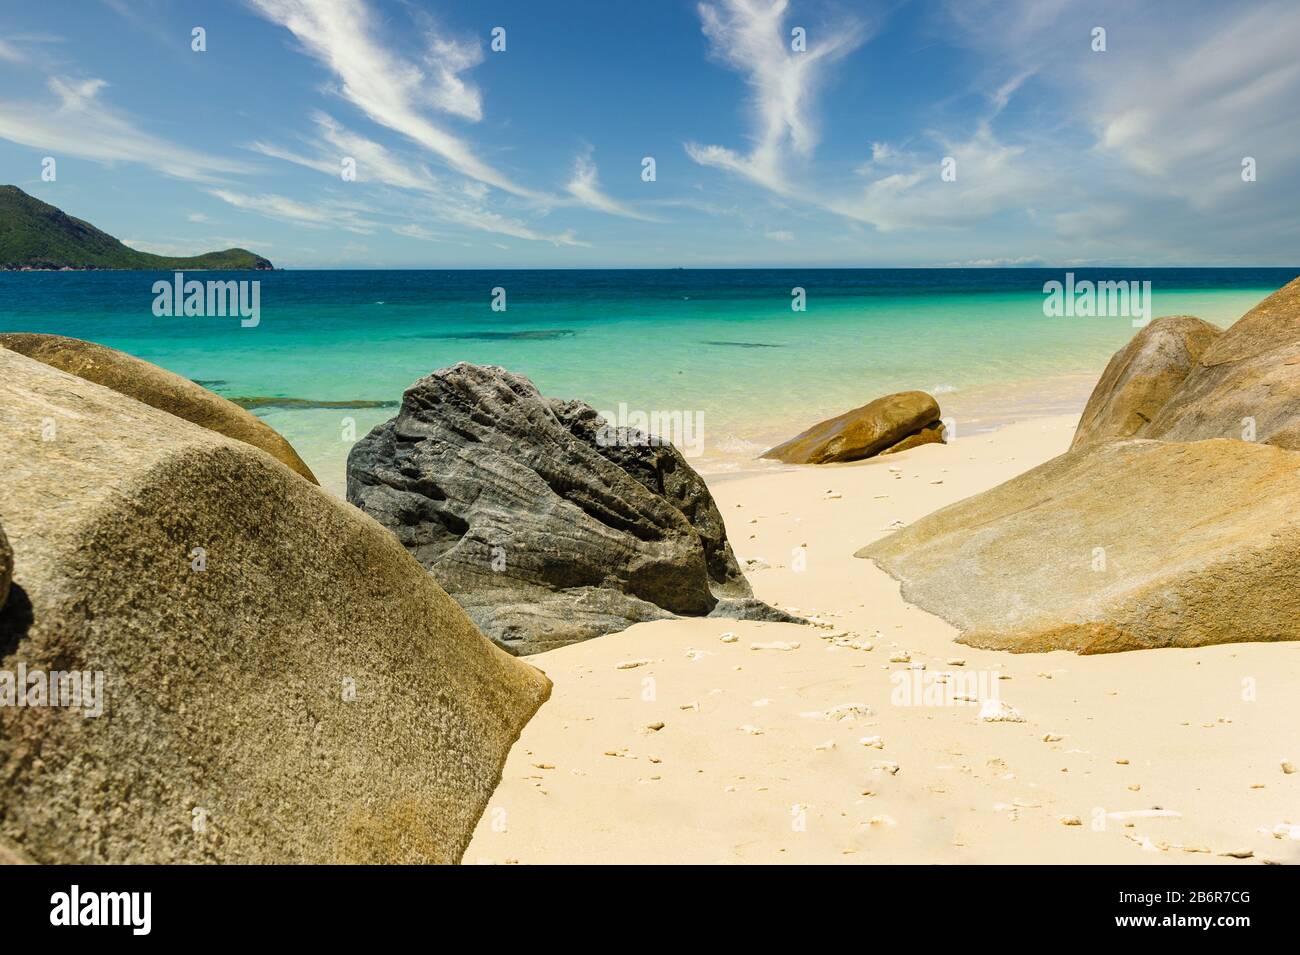 Blick über blaugrünes, kristallklares Wasser des Pazifischen Ozeans von der Ufervegetation Nudey Beach, die mit runden Strandbrocken durchsetzt ist. Stockfoto